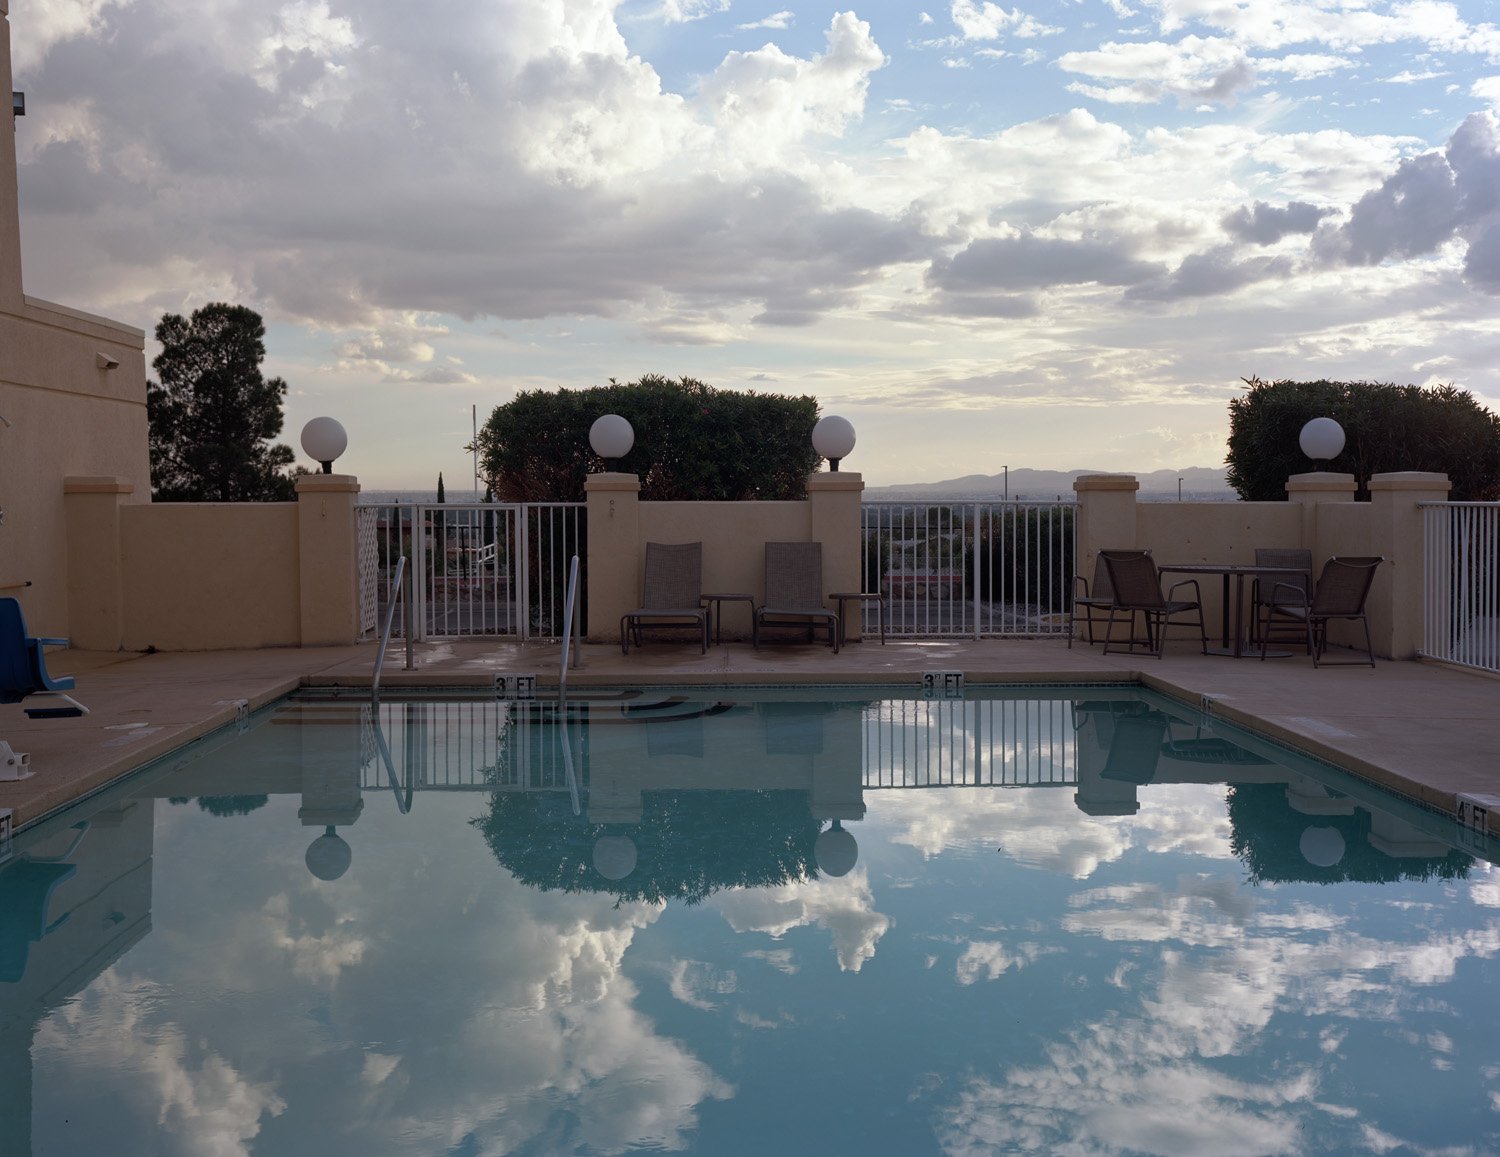 Pool at La Quinta Inn, El Paso, Texas